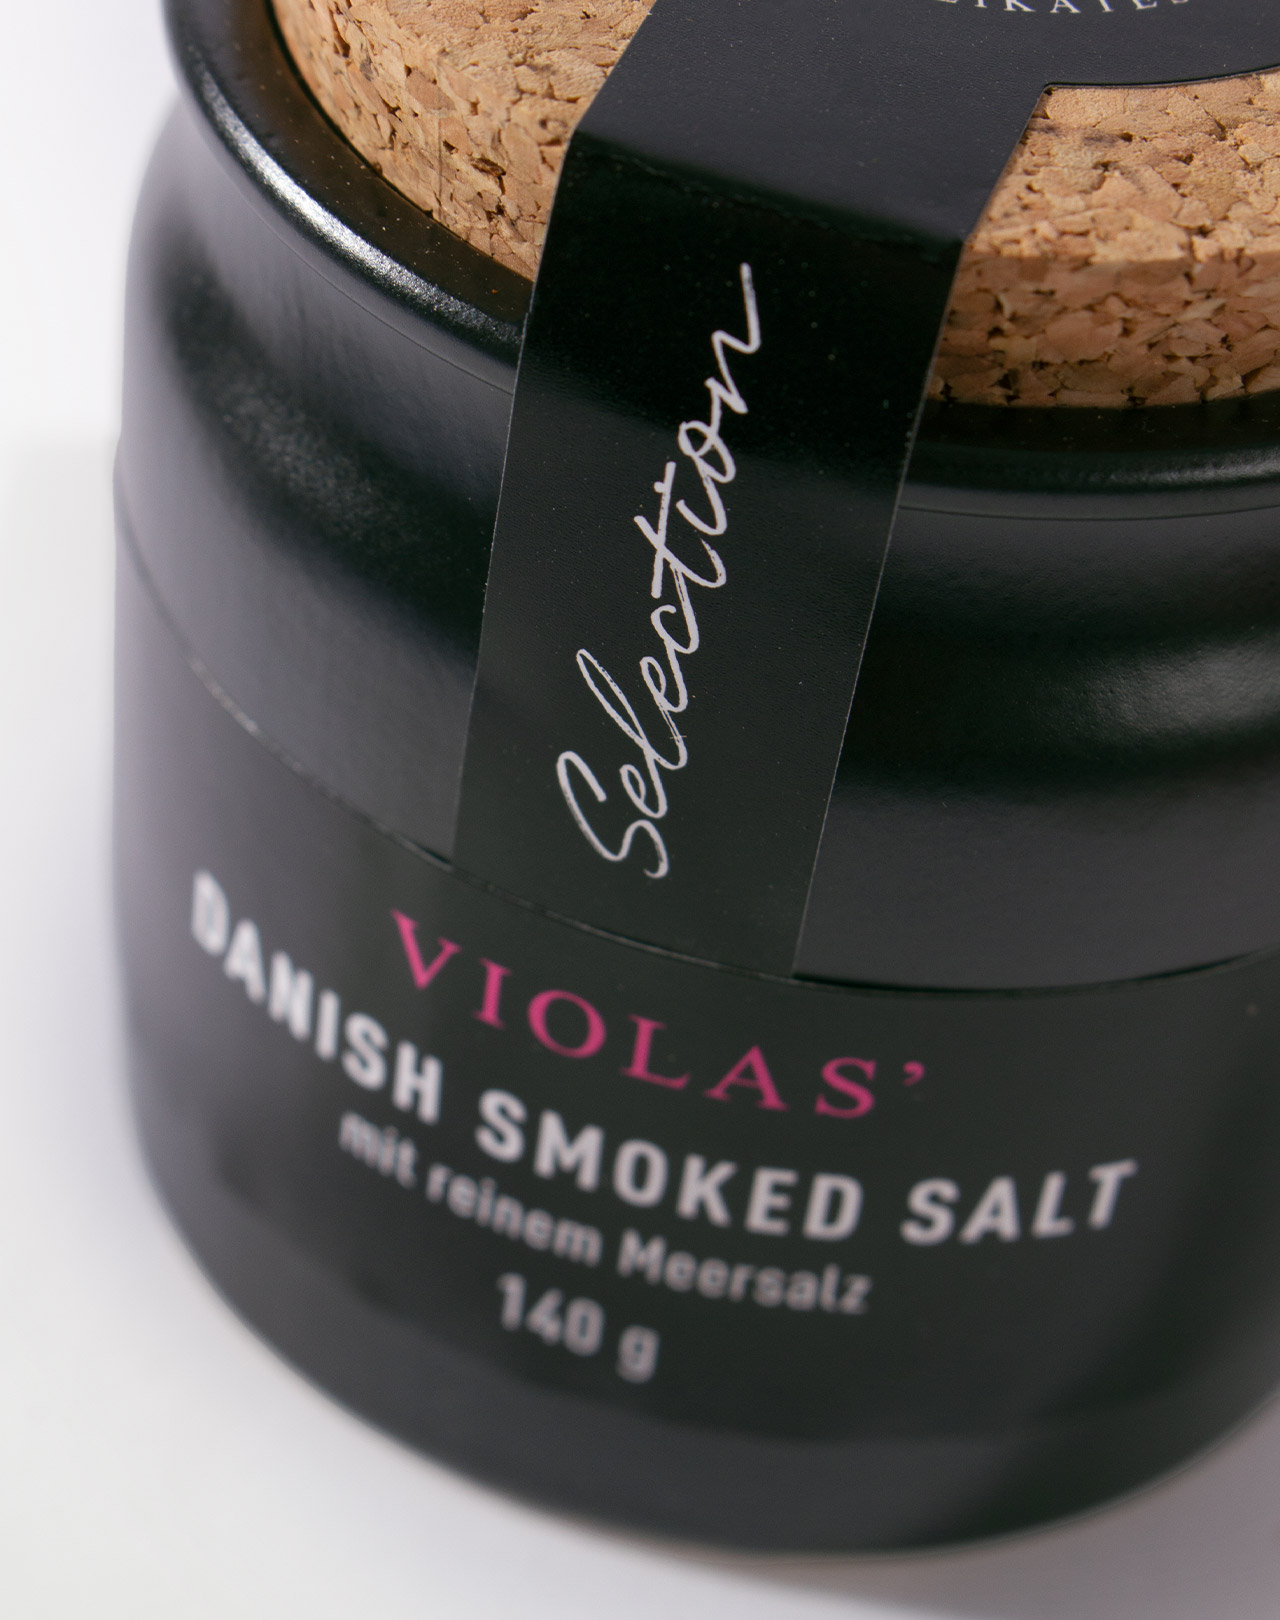 Selection Line: Danish Smoked Salt